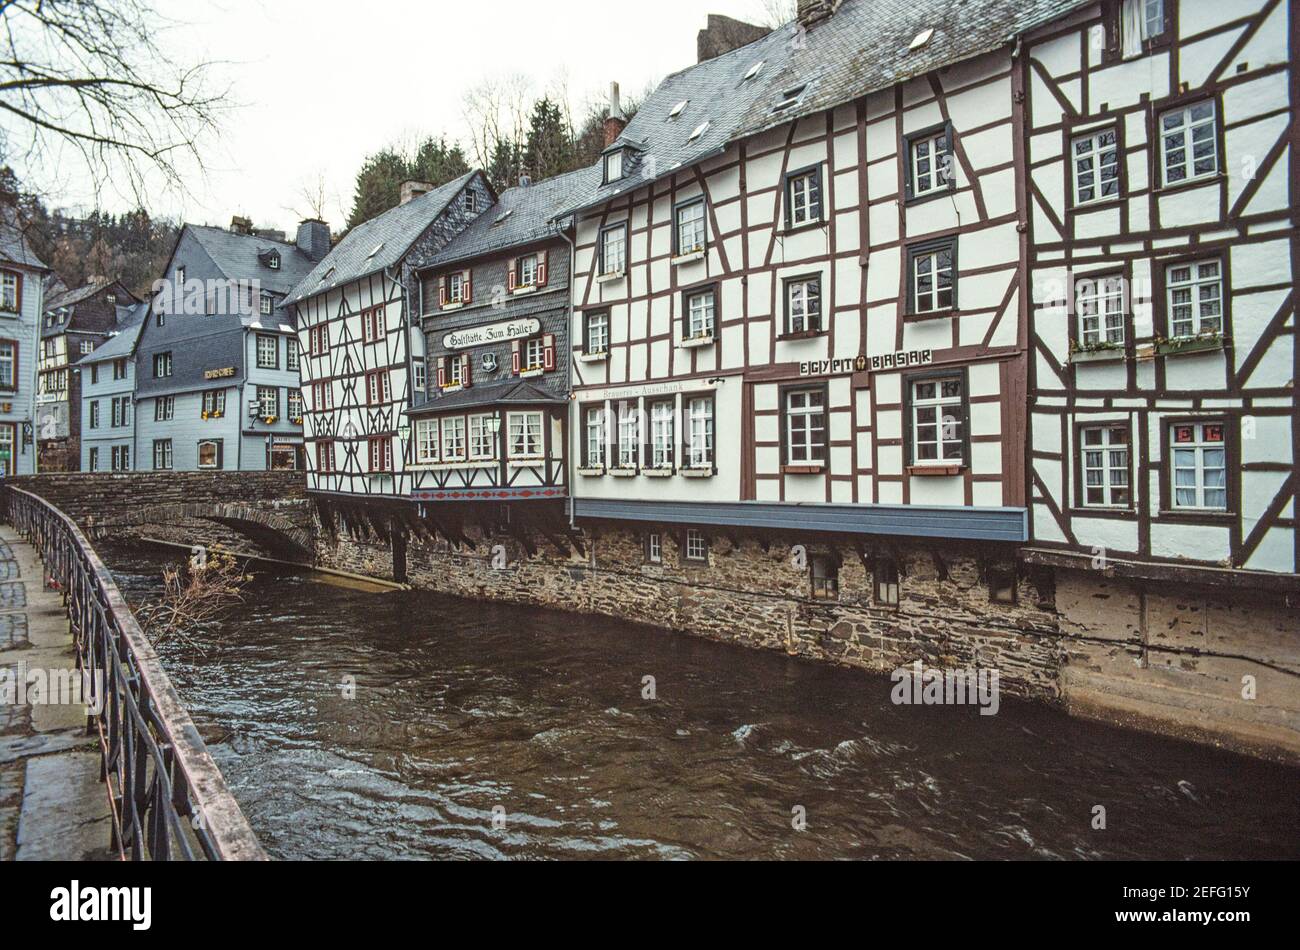 Monschau ist eine Stadt in Westdeutschland, nahe der belgischen Grenze. Es ist bekannt für sein mittelalterliches Zentrum, mit Fachwerkhäusern und engen Kopfsteinpflasterstraßen. Monschau Eifel Deutschland EU Europa Stockfoto